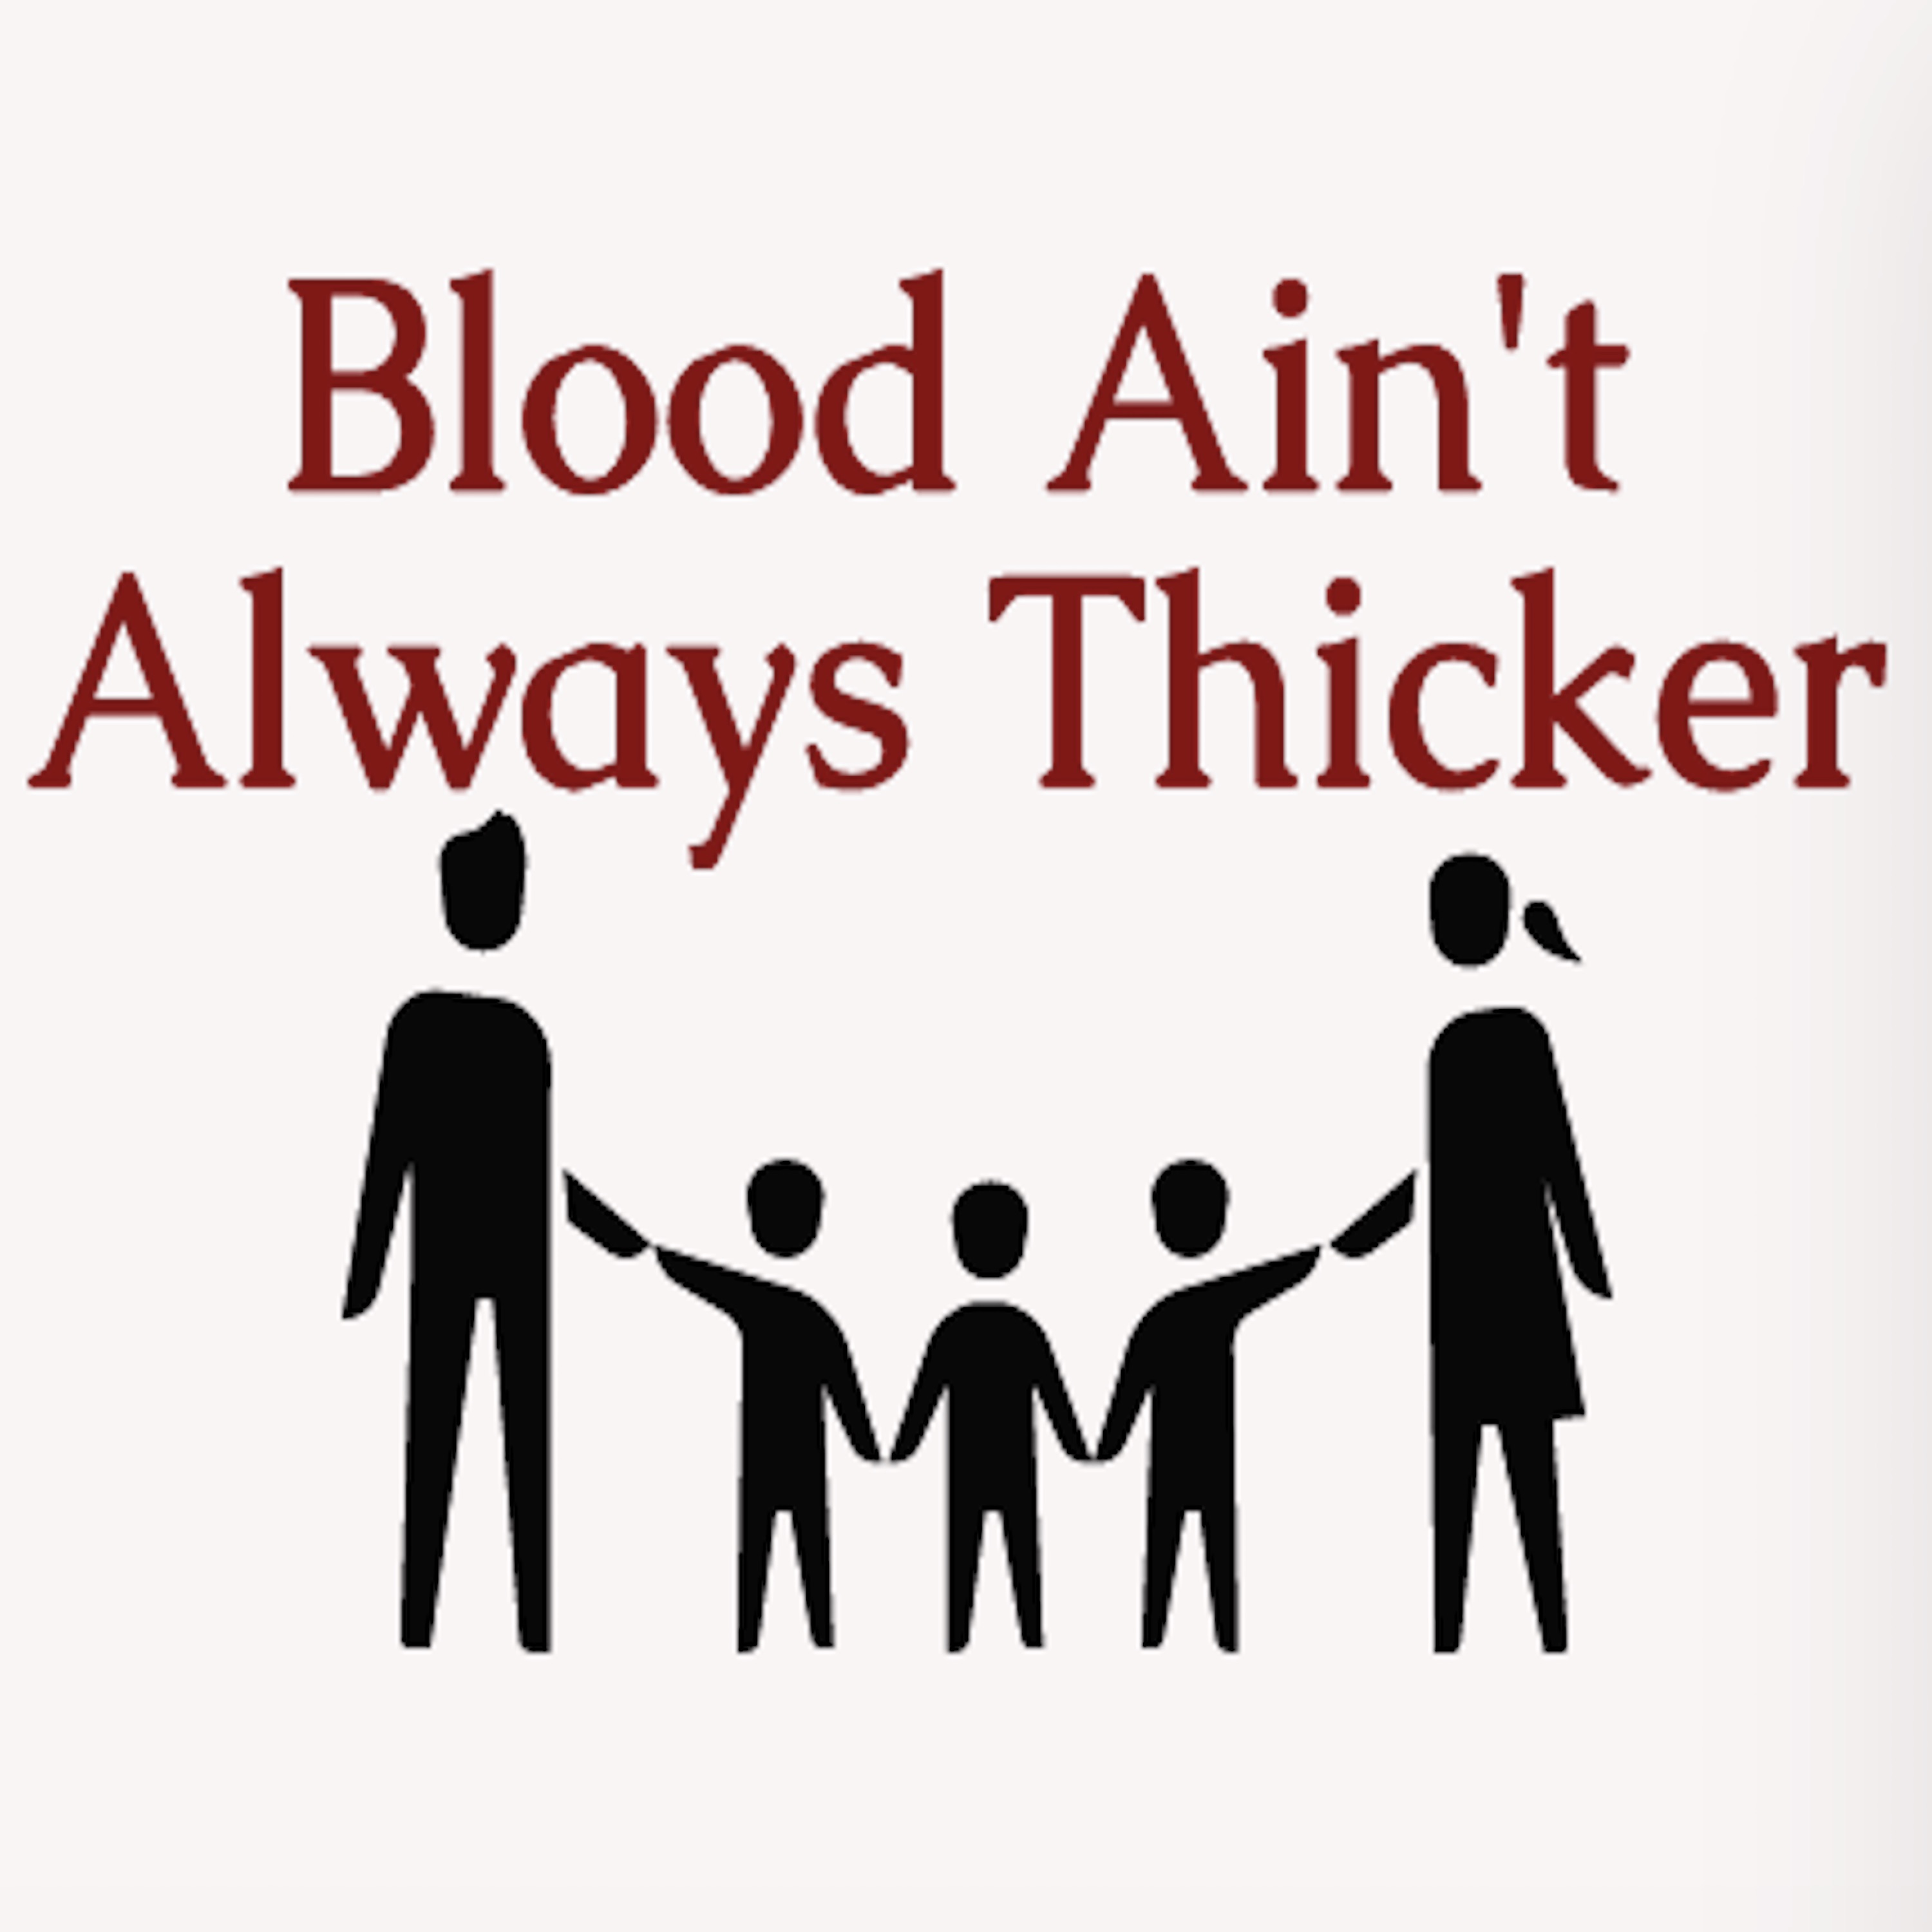 Blood Ain't Always Thicker